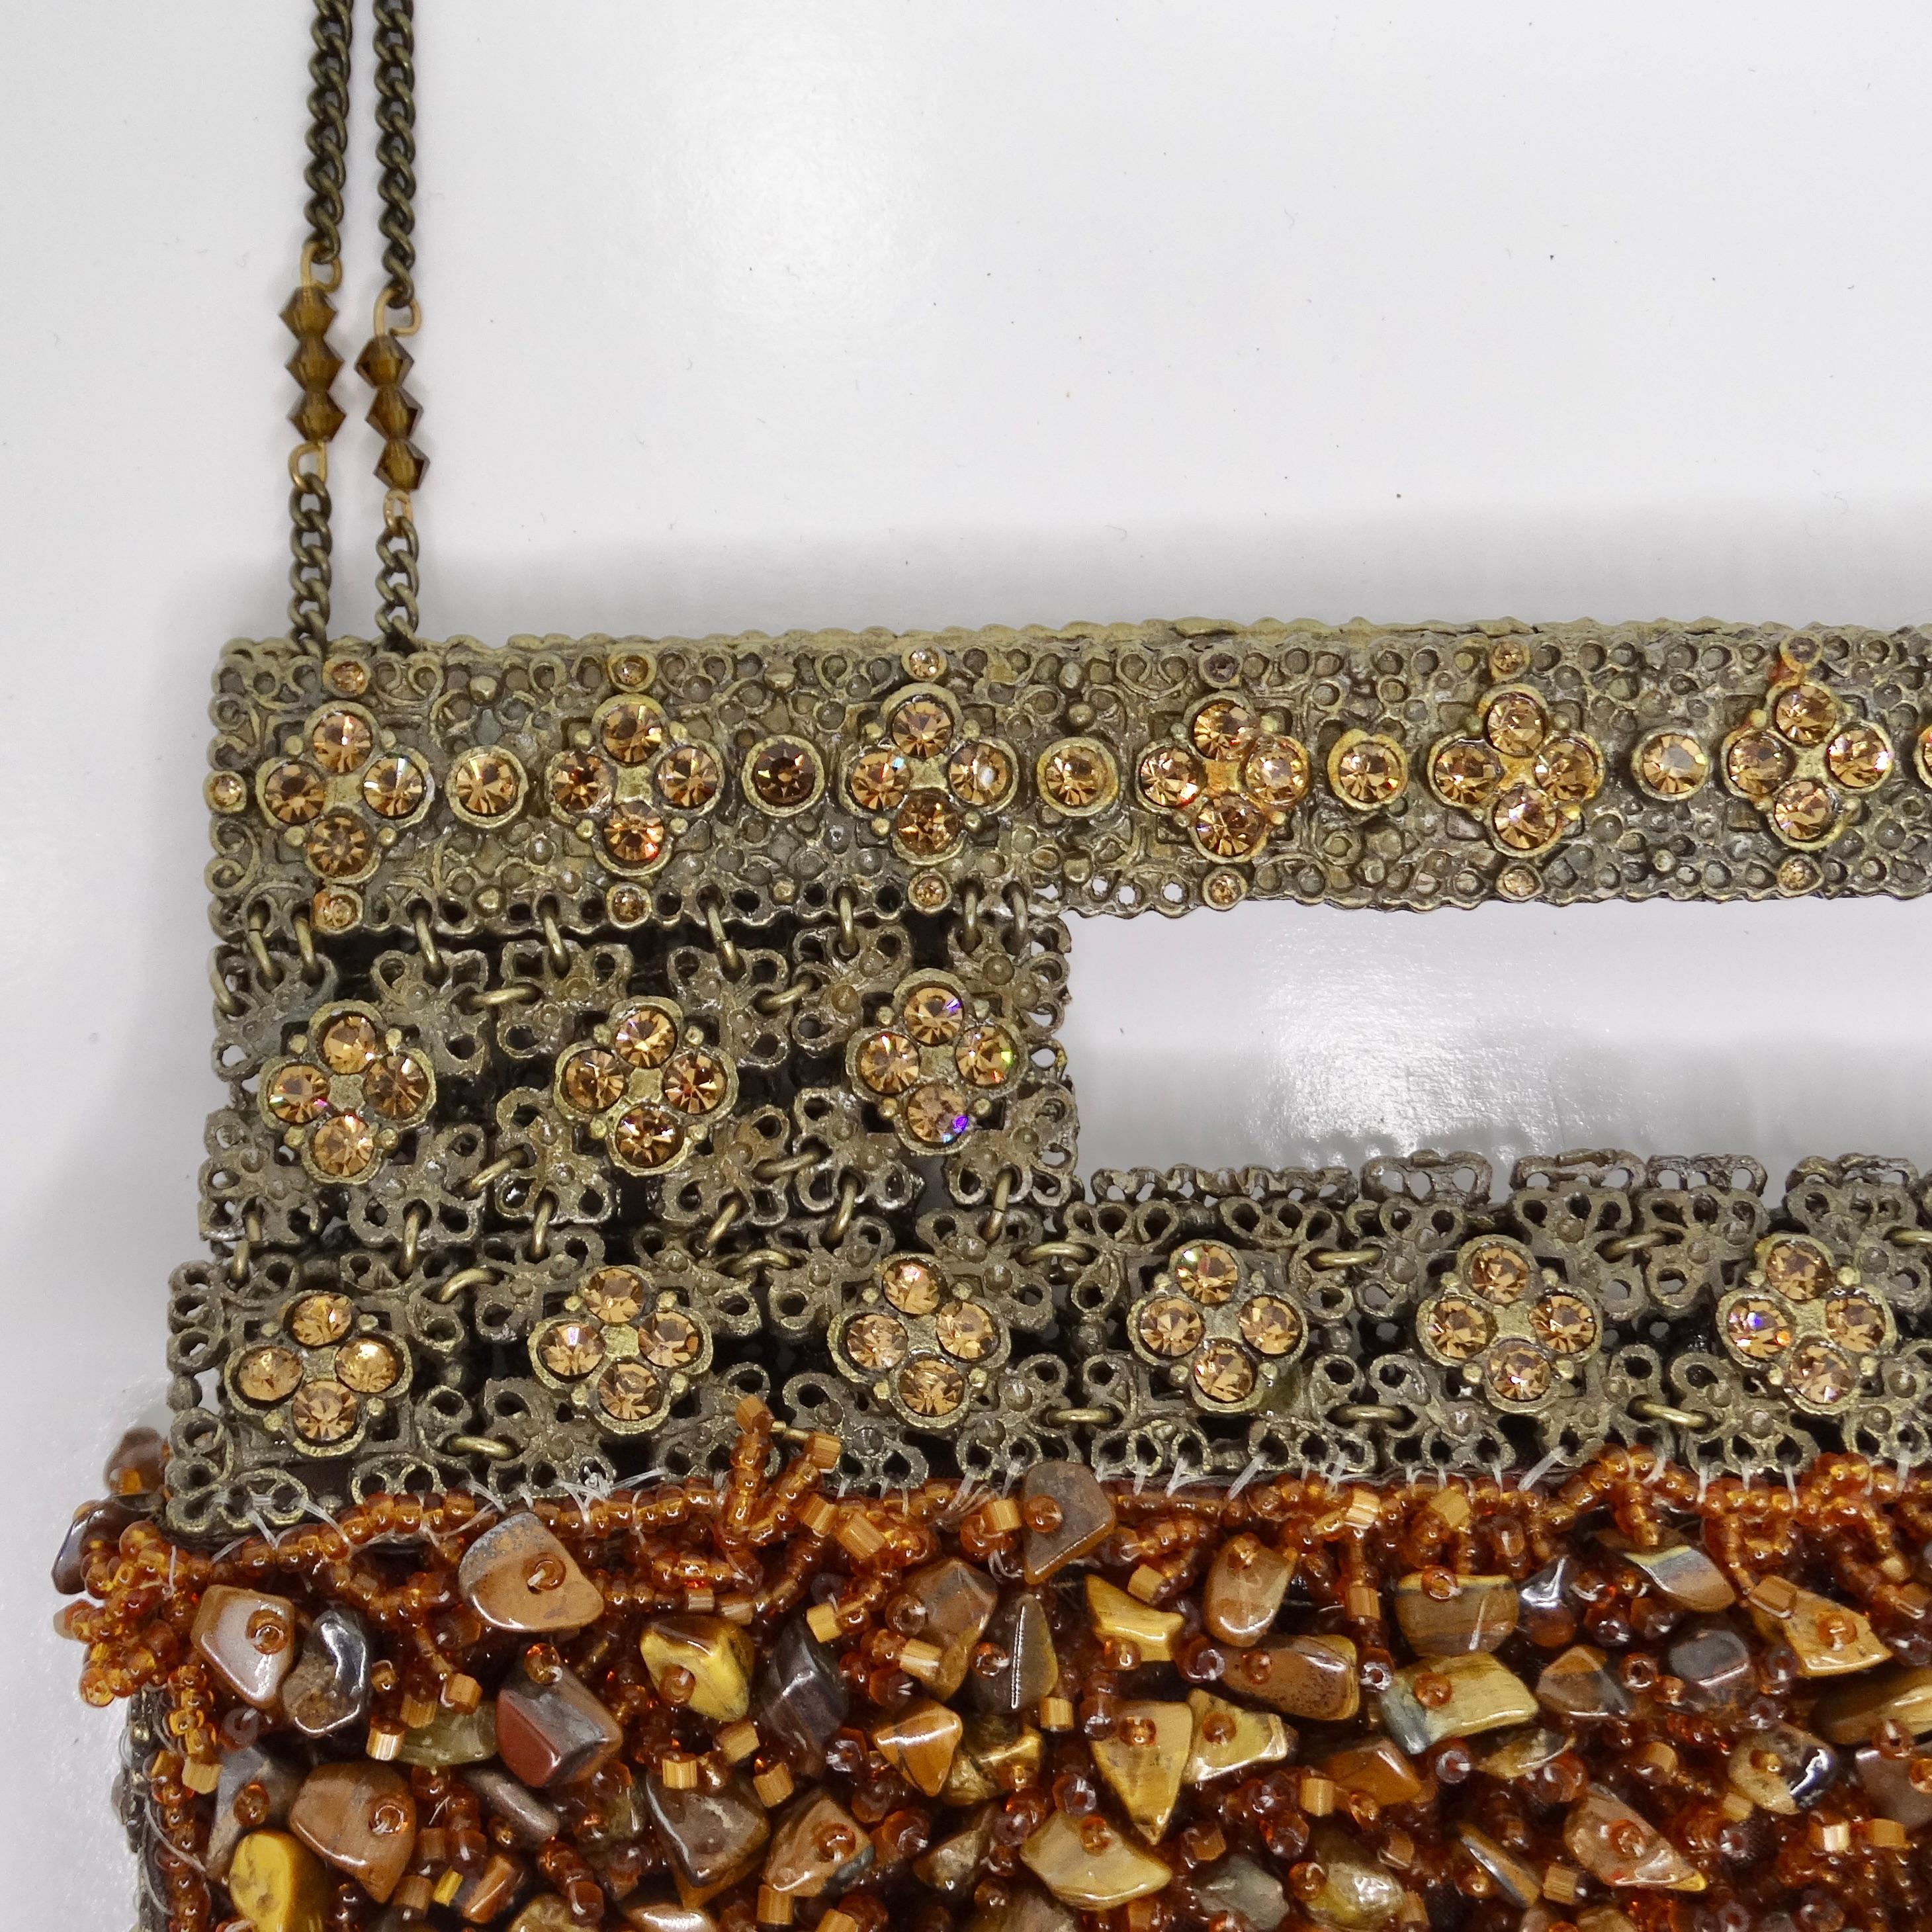 Die atemberaubende 1970er Tiger Eye Stone Swarovski Crystal Embellished Handtasche ist ein wahres Meisterwerk der Handwerkskunst, das Luxus und Glamour ausstrahlt. Die aus bronzefarbenem Metall gefertigte Handtasche ist mit einer Vielzahl von